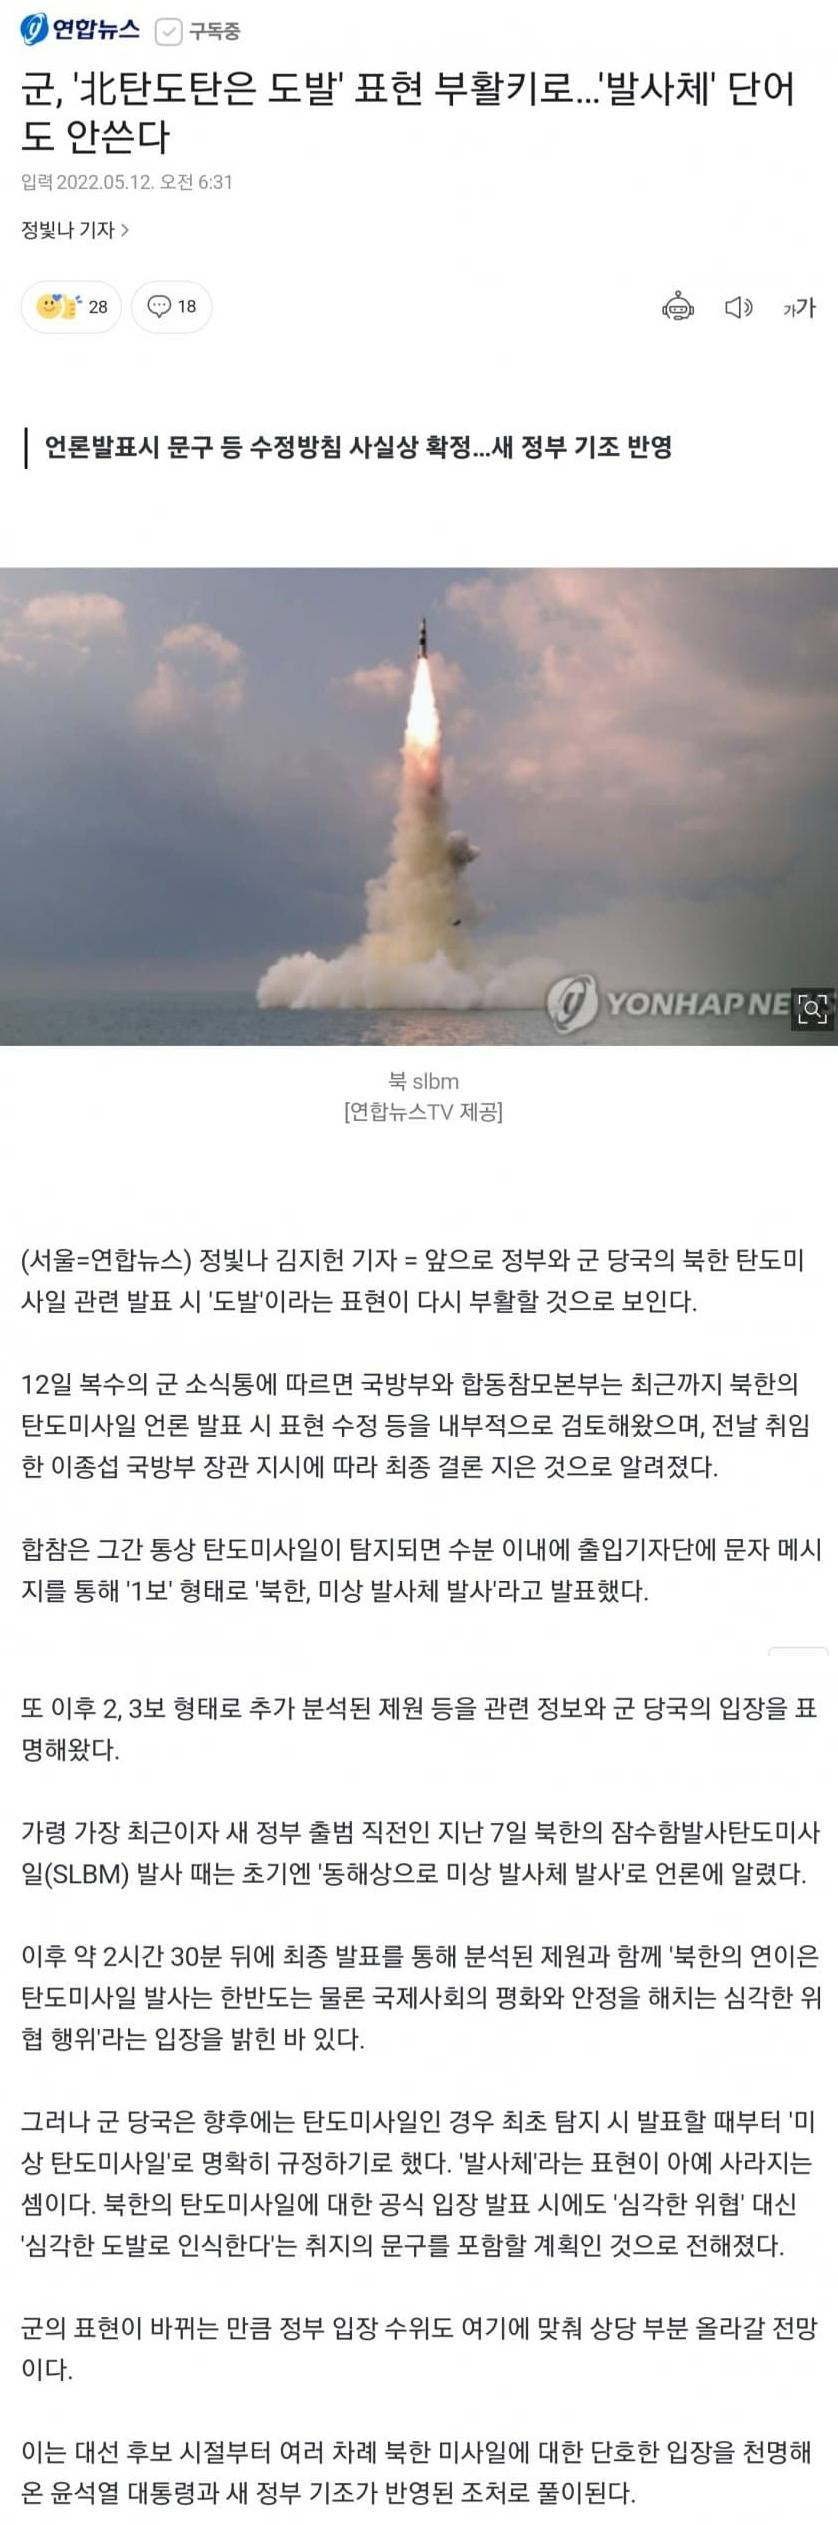 北朝鮮の夢が作った未詳発射体の表現廃棄